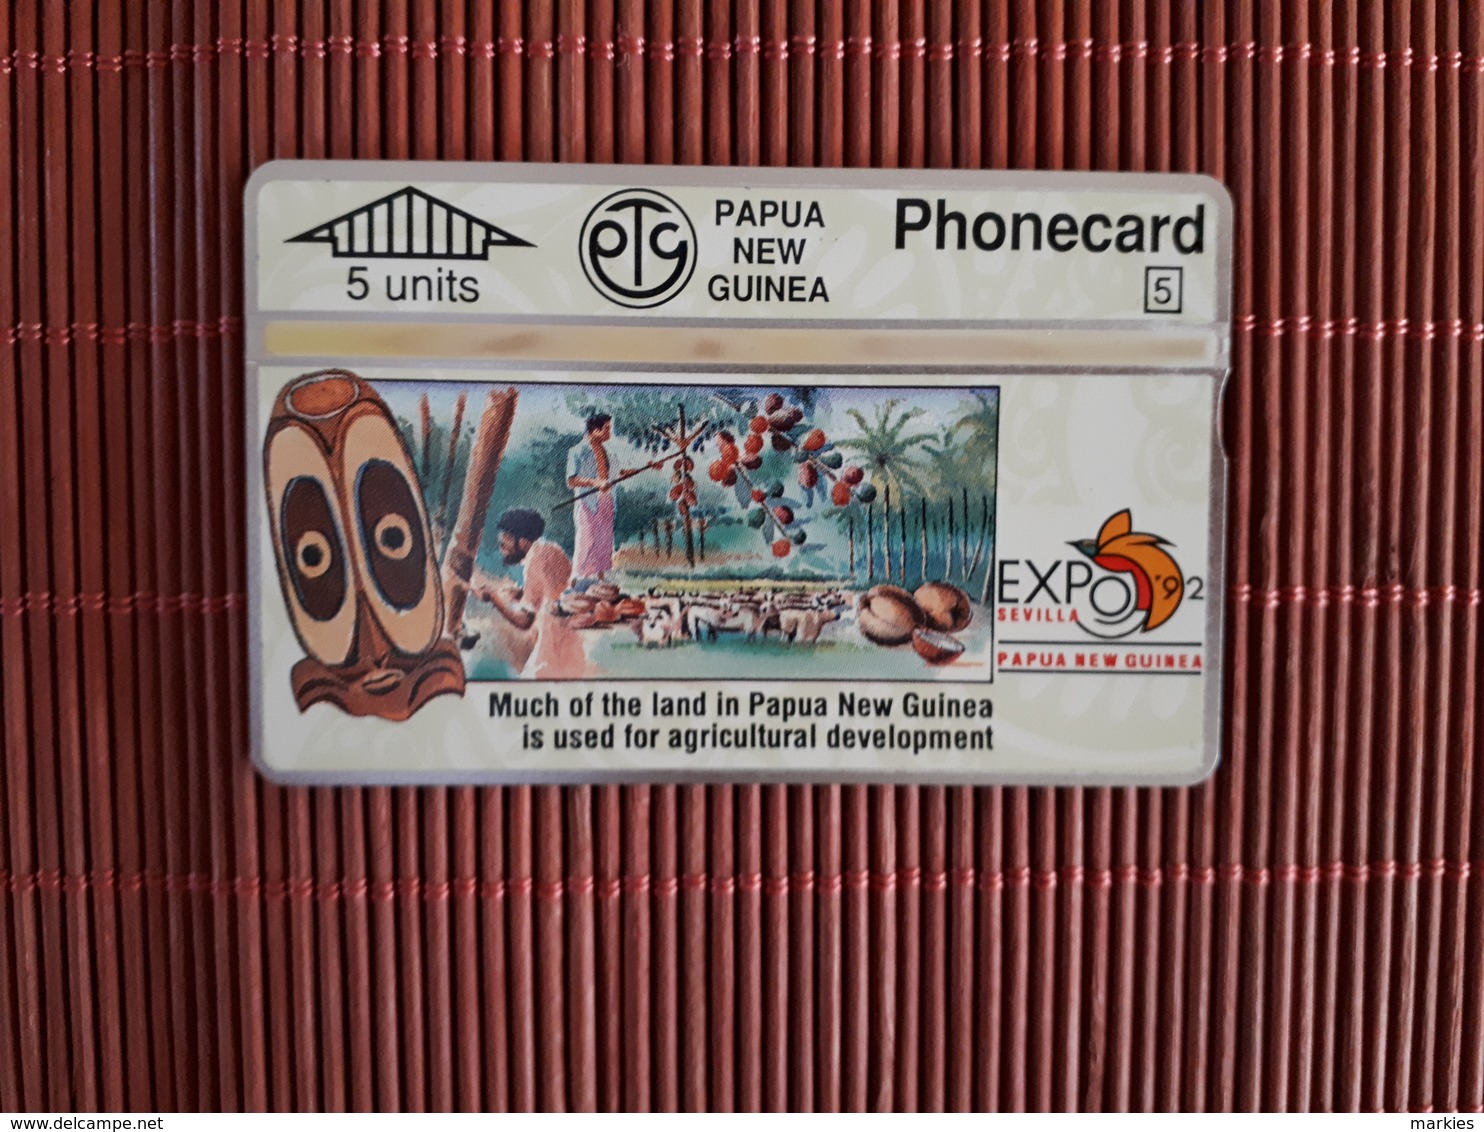 Phonecard Papua New Guinea 306 D (Mint,Neuve) Rare - Papouasie-Nouvelle-Guinée